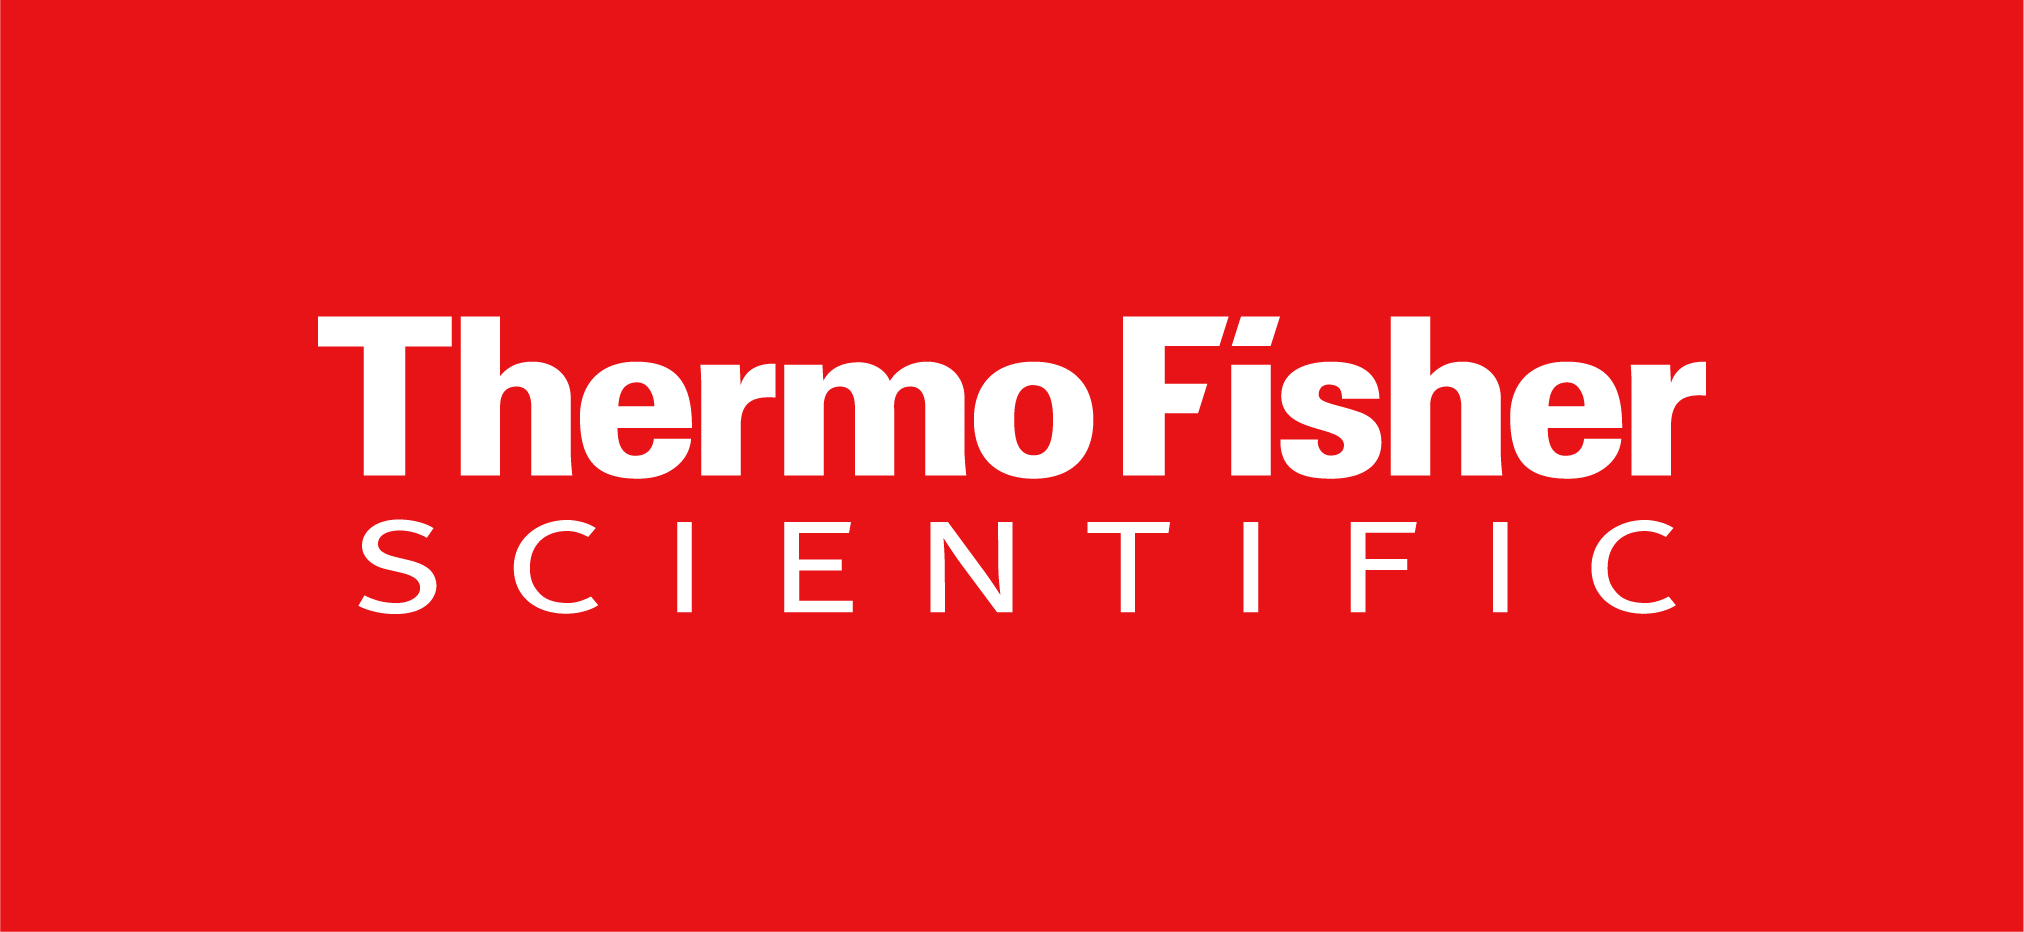 Thermo Fisher Scientific - Biosciences